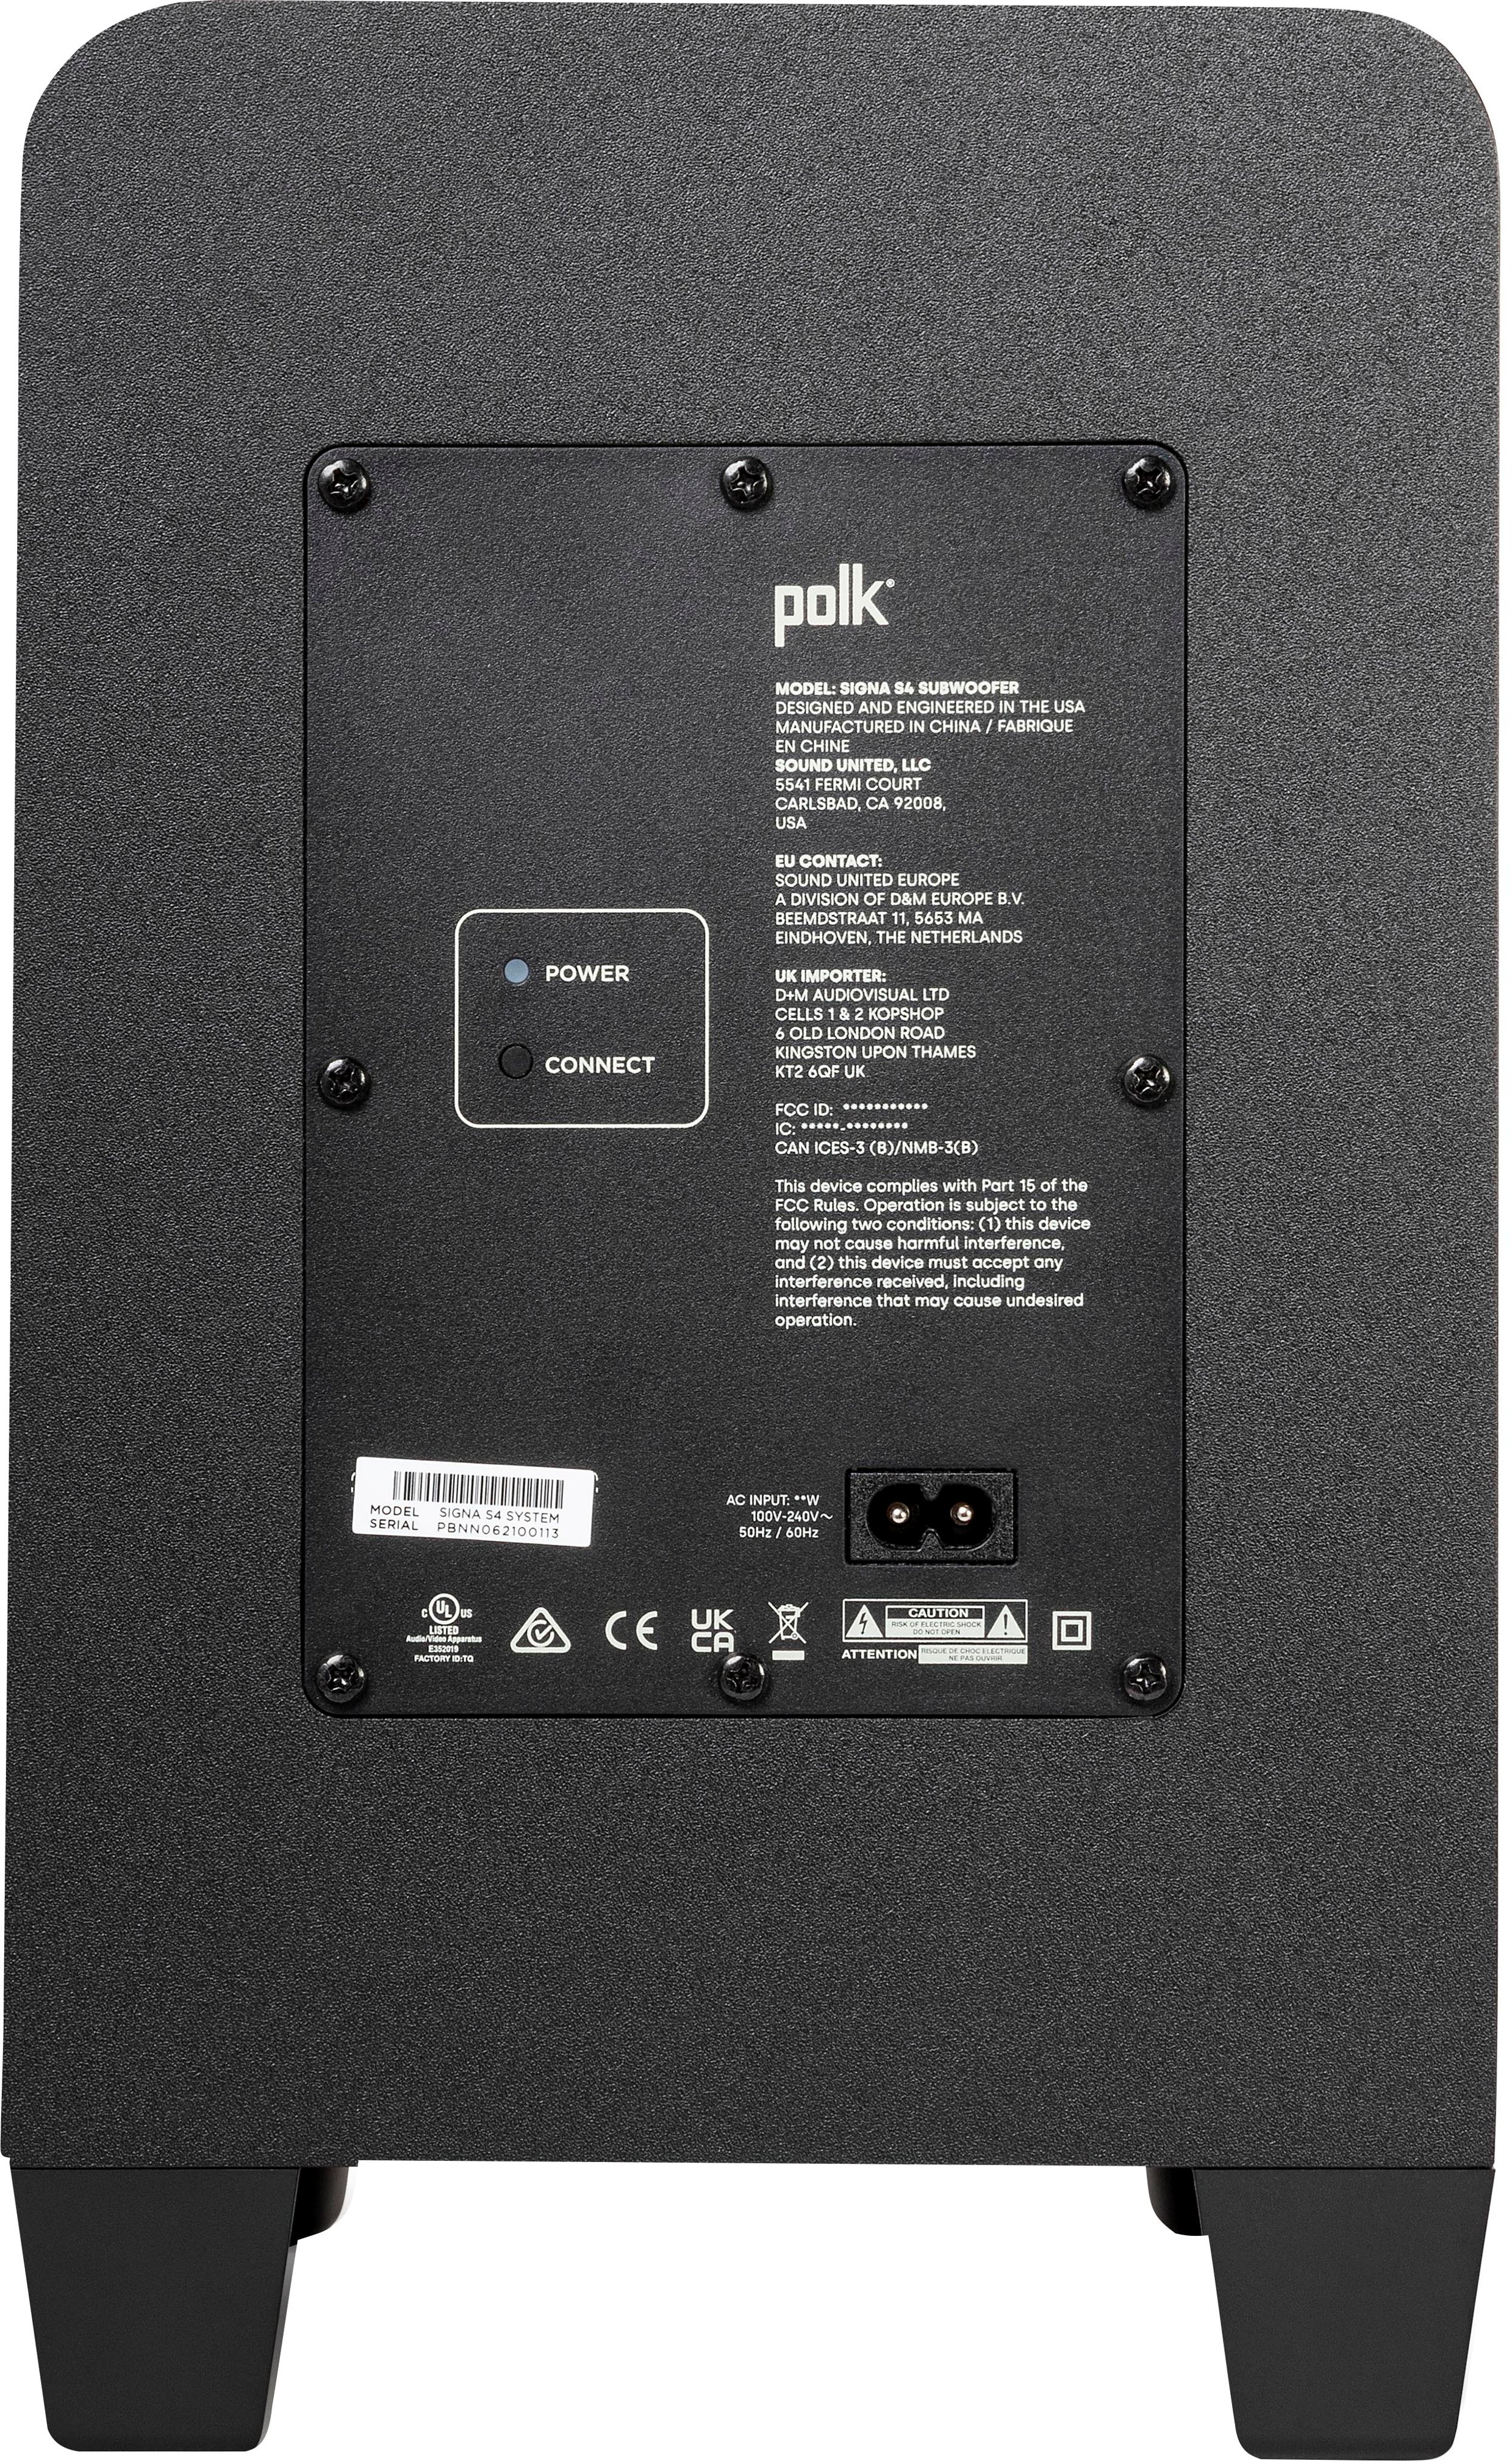 Polk Audio Signa S4 Dolby Atmos 3.1.2 Soundbar with Wireless Subwoofer 